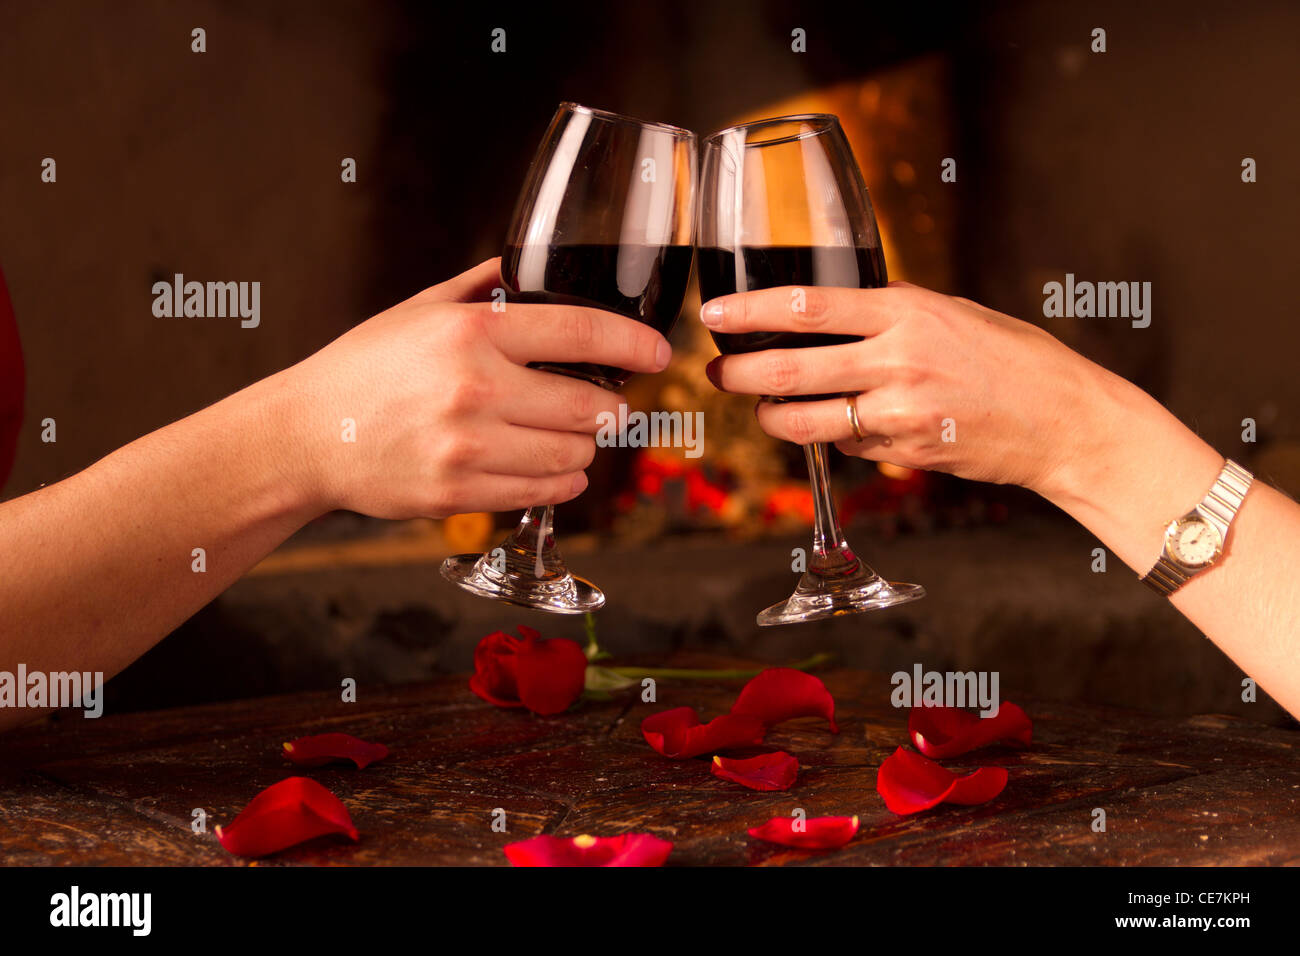 Un toast romantique Banque D'Images